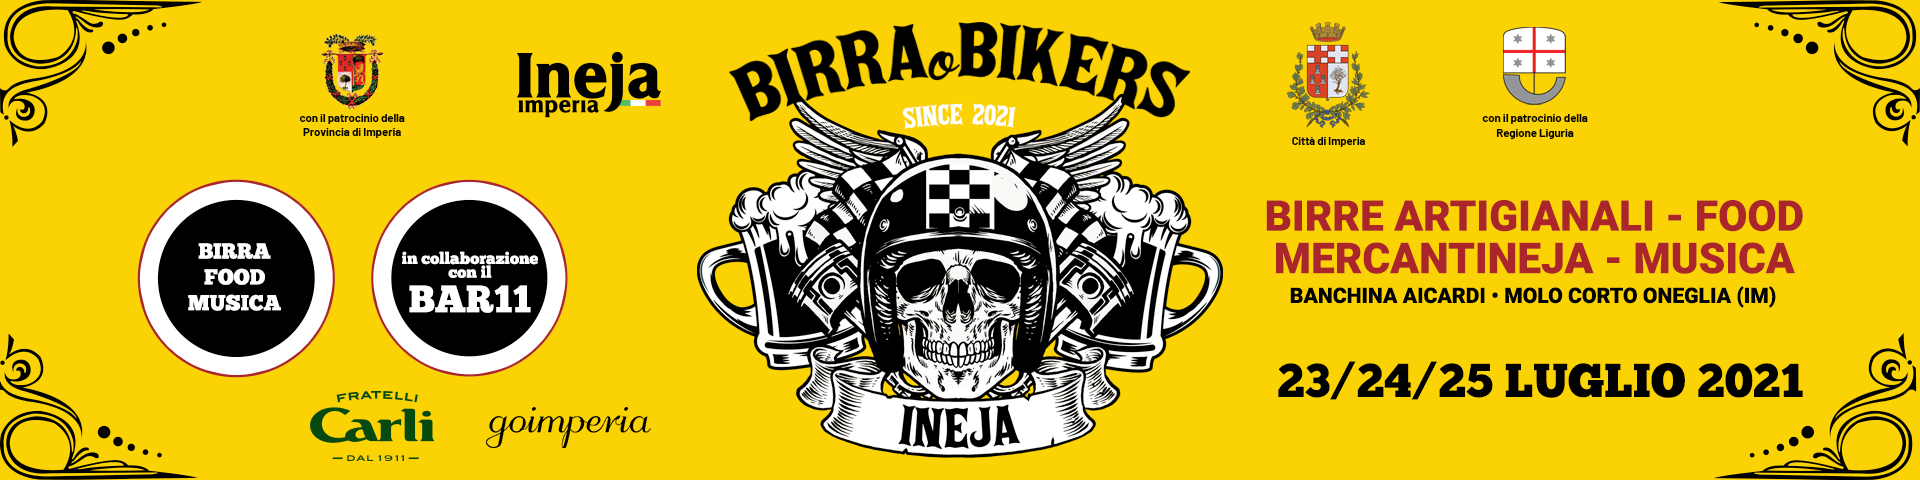 banner_sito_birra_bikers